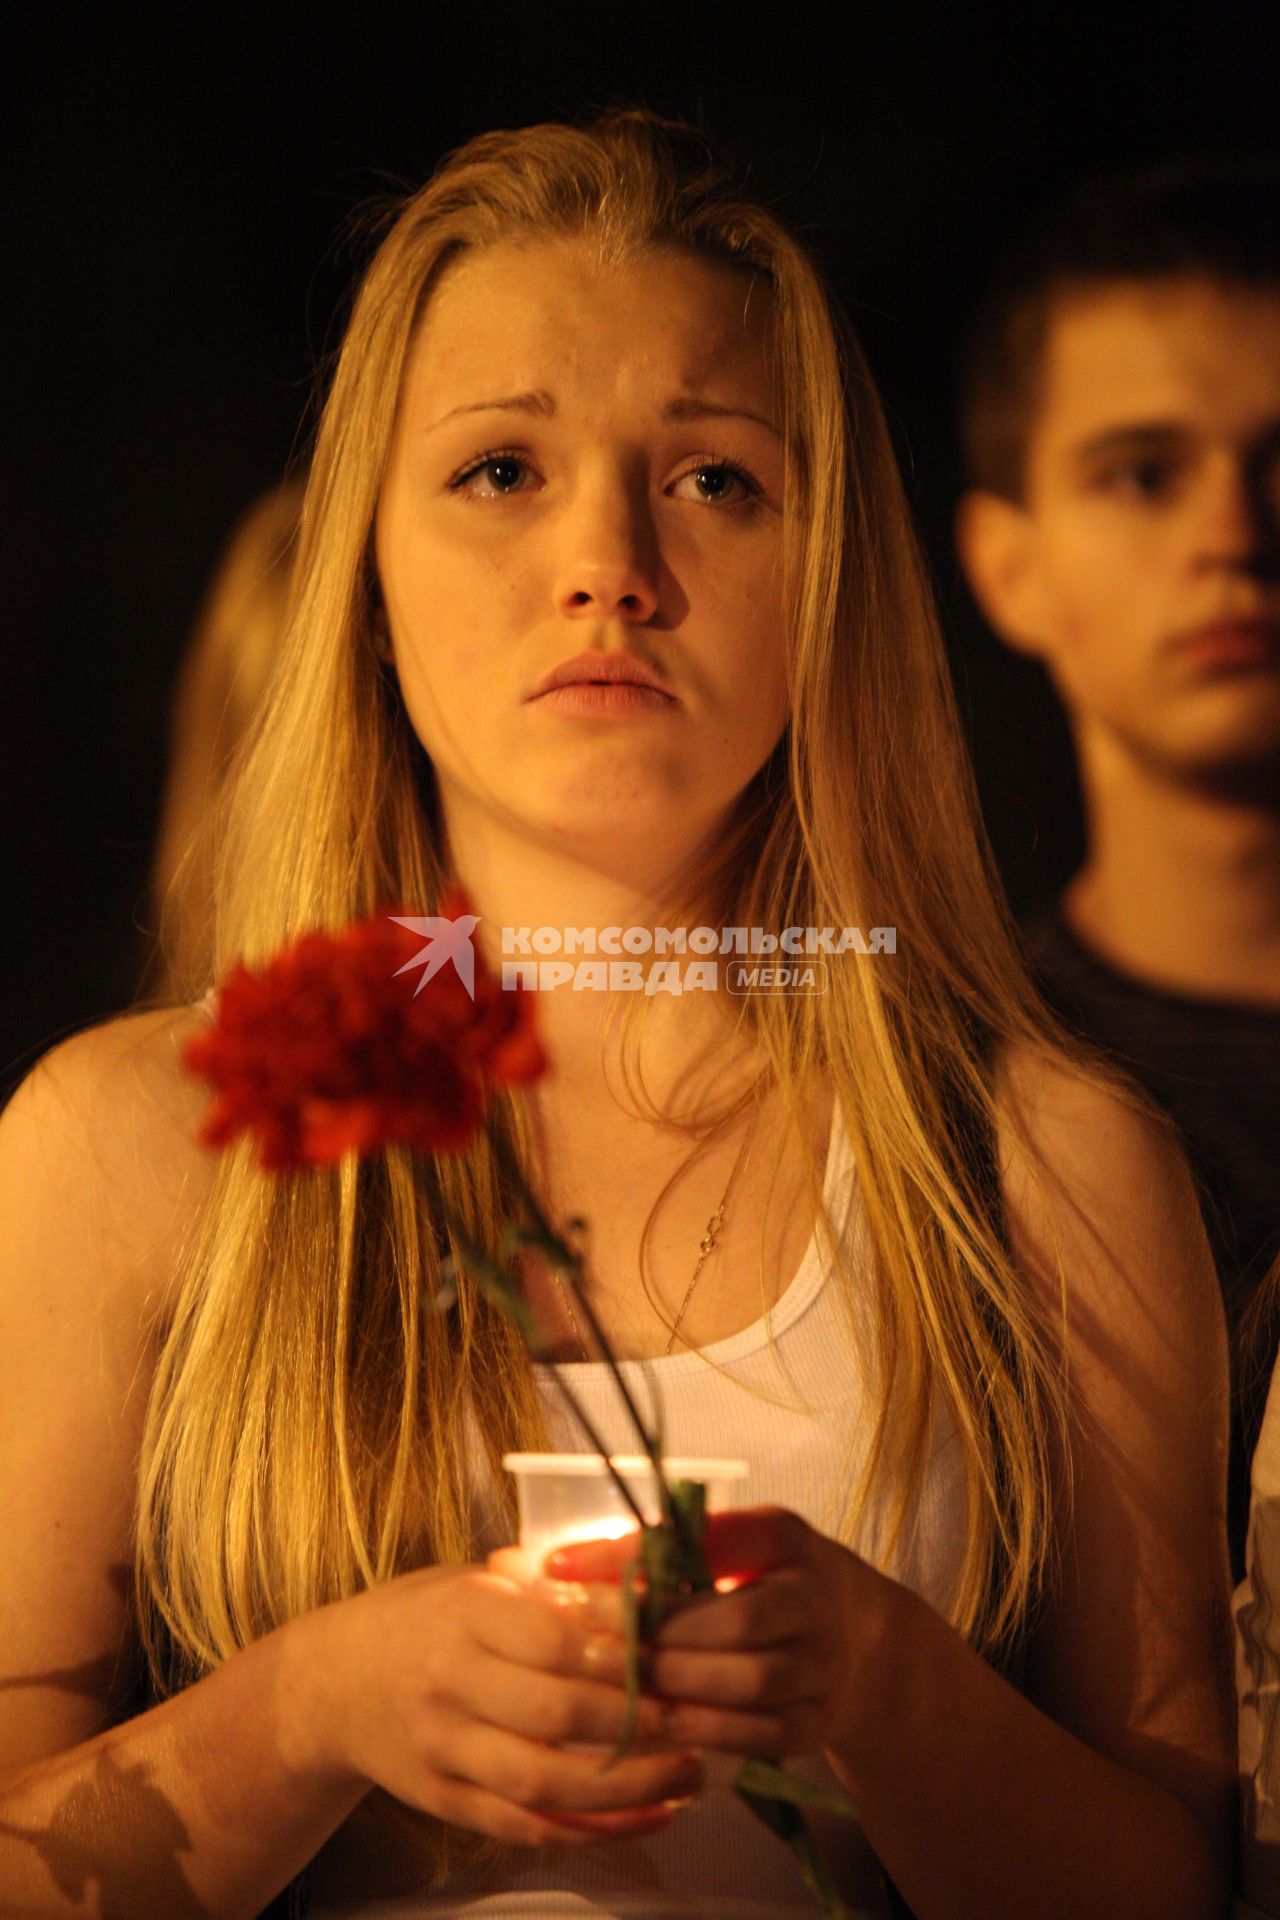 Молодая девушка держат в руках стаканчик со свечой и гвоздики, в глазах у нее слезы